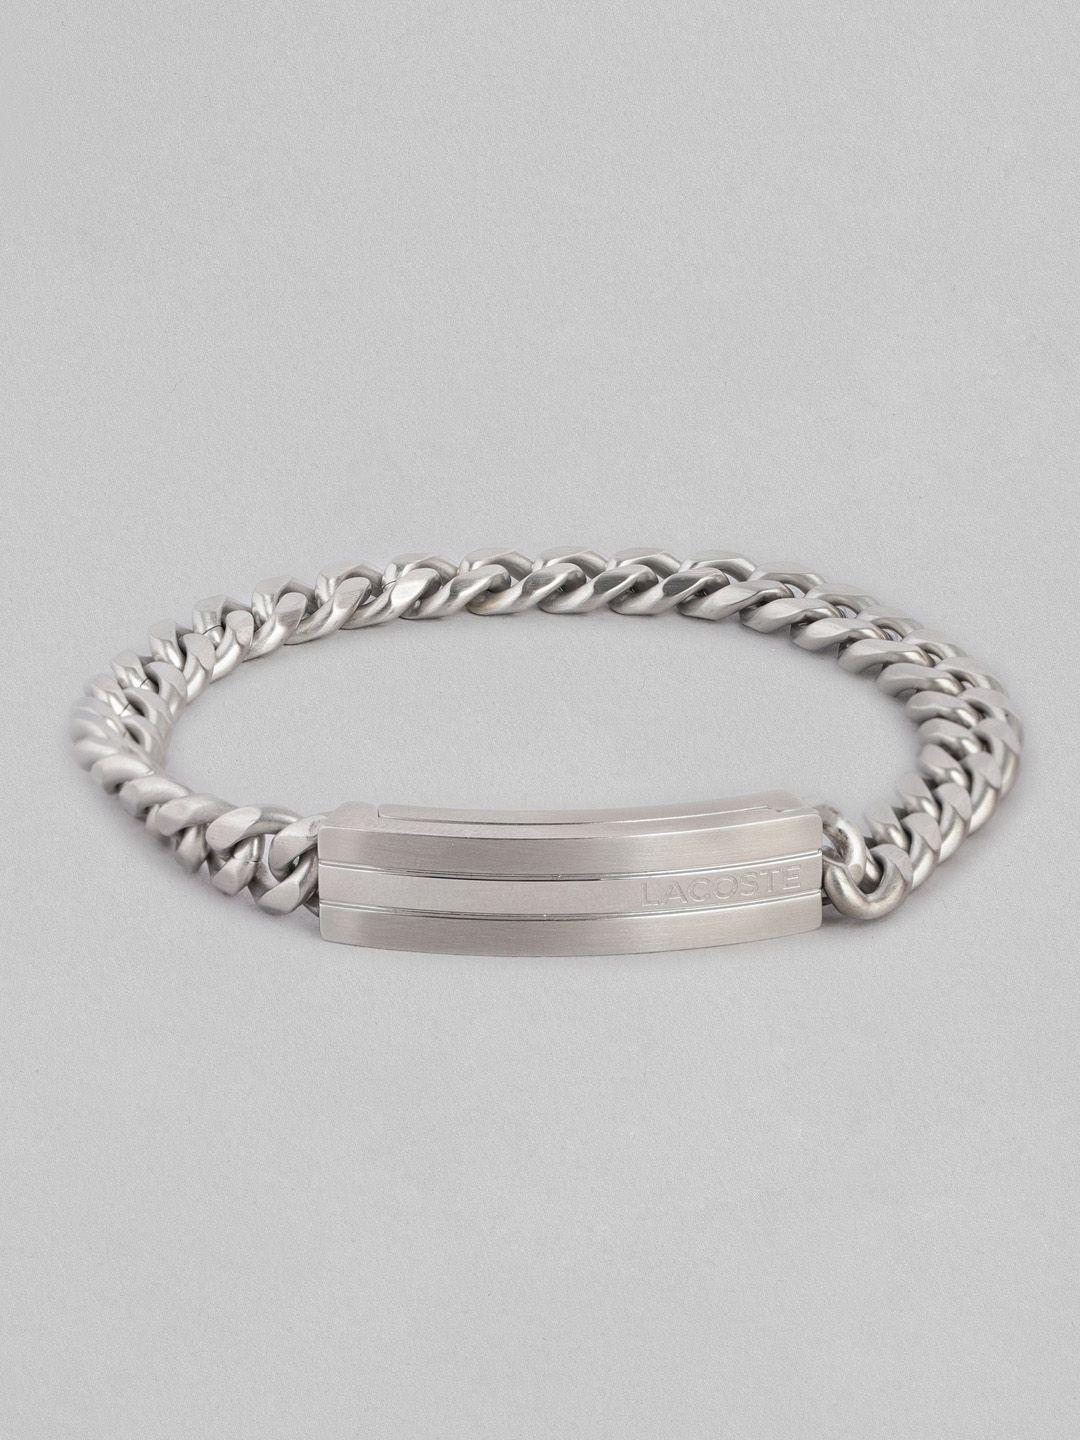 lacoste-men-adventurer-link-bracelet